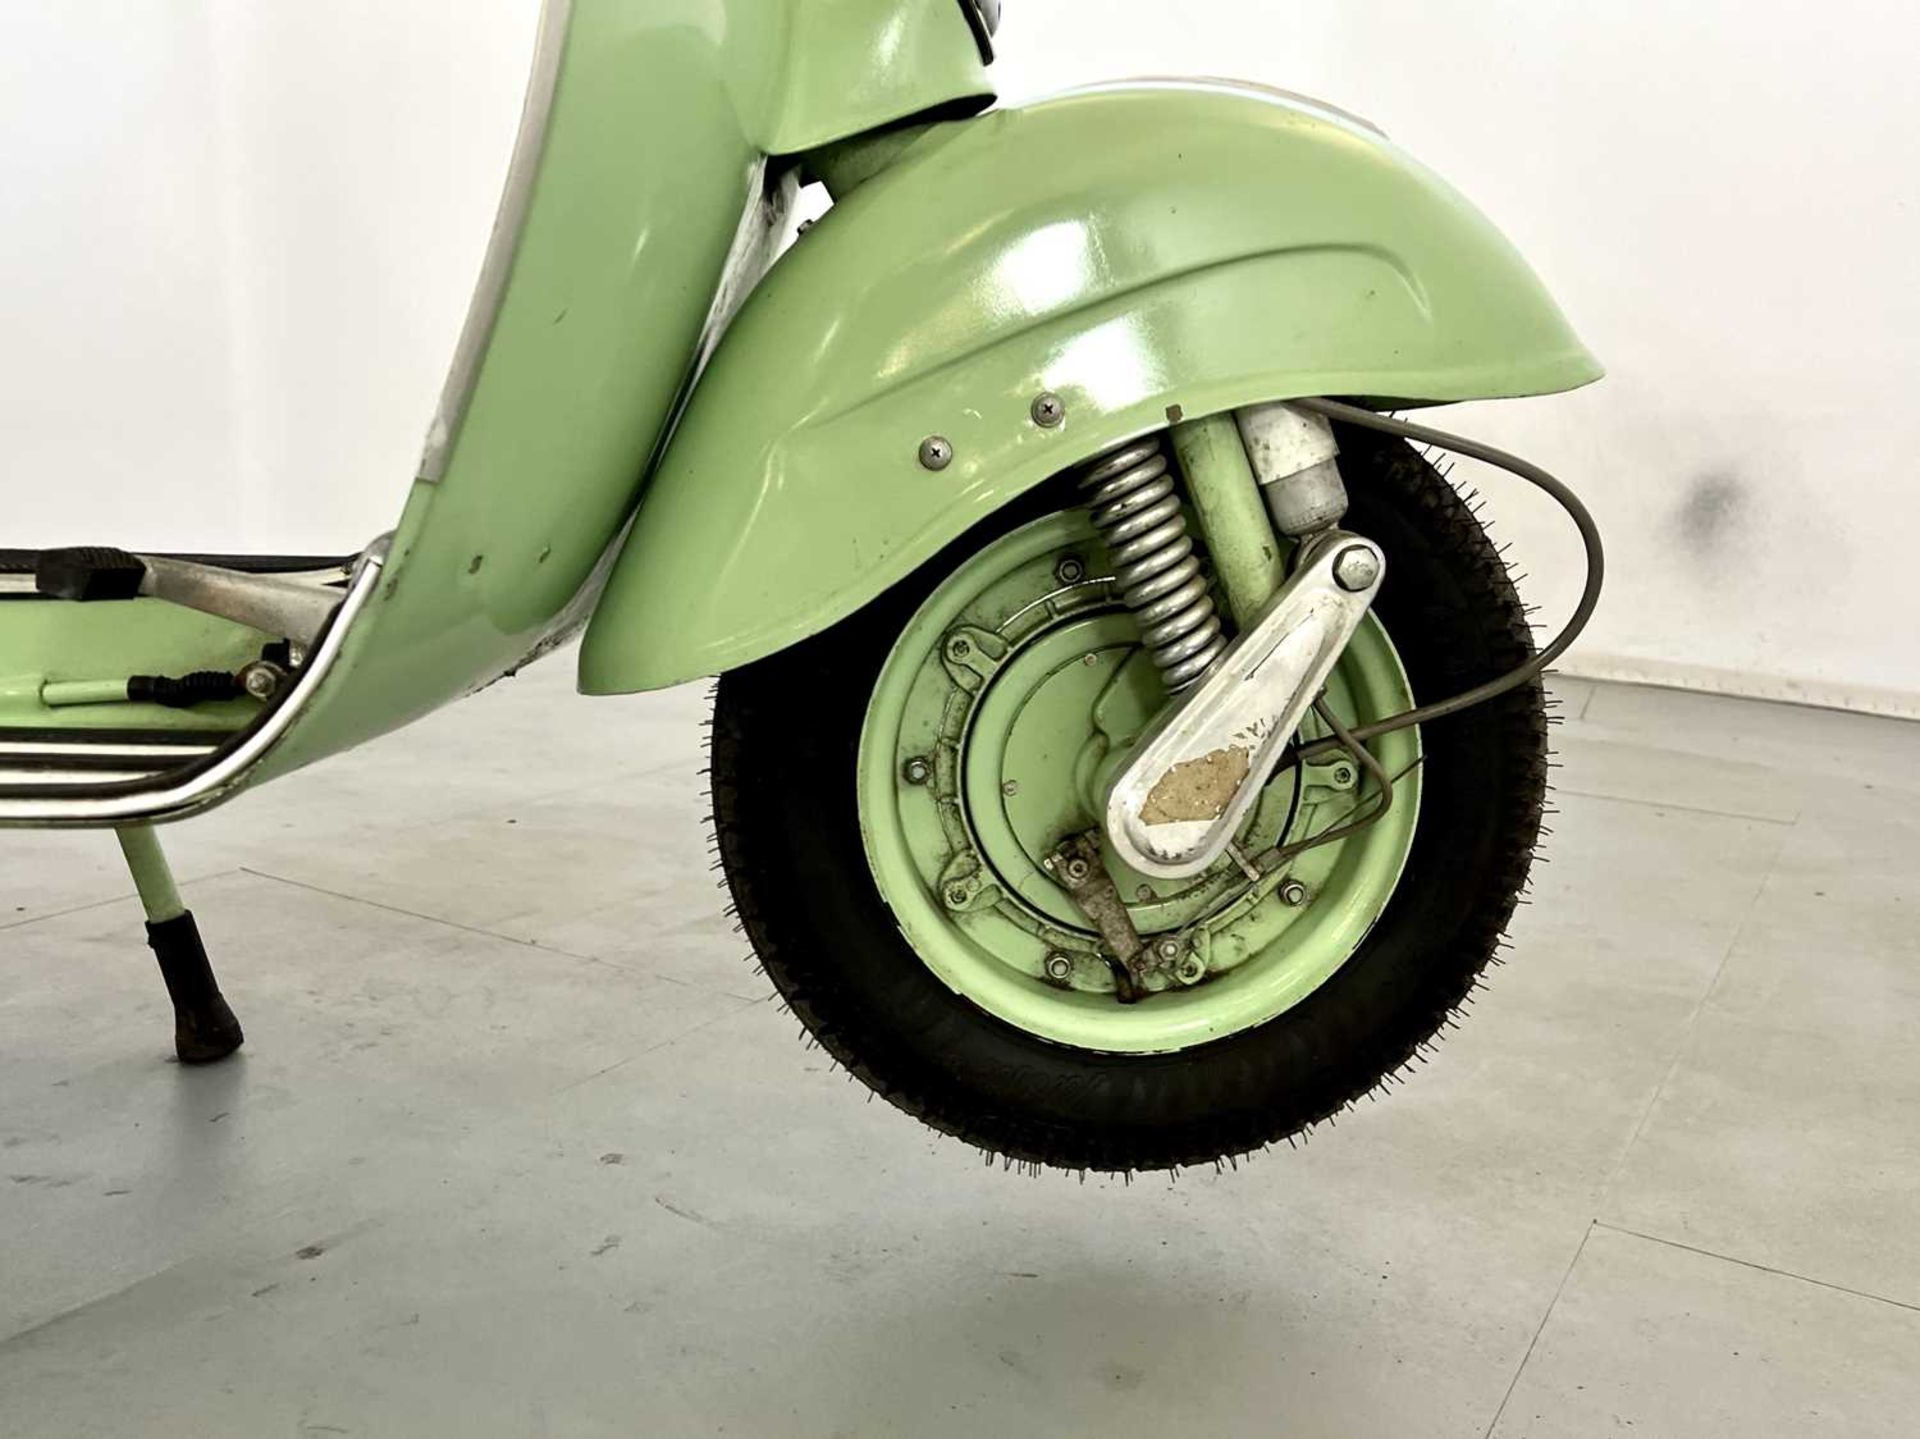 1965 Piaggio Vespa 150 - Image 8 of 18